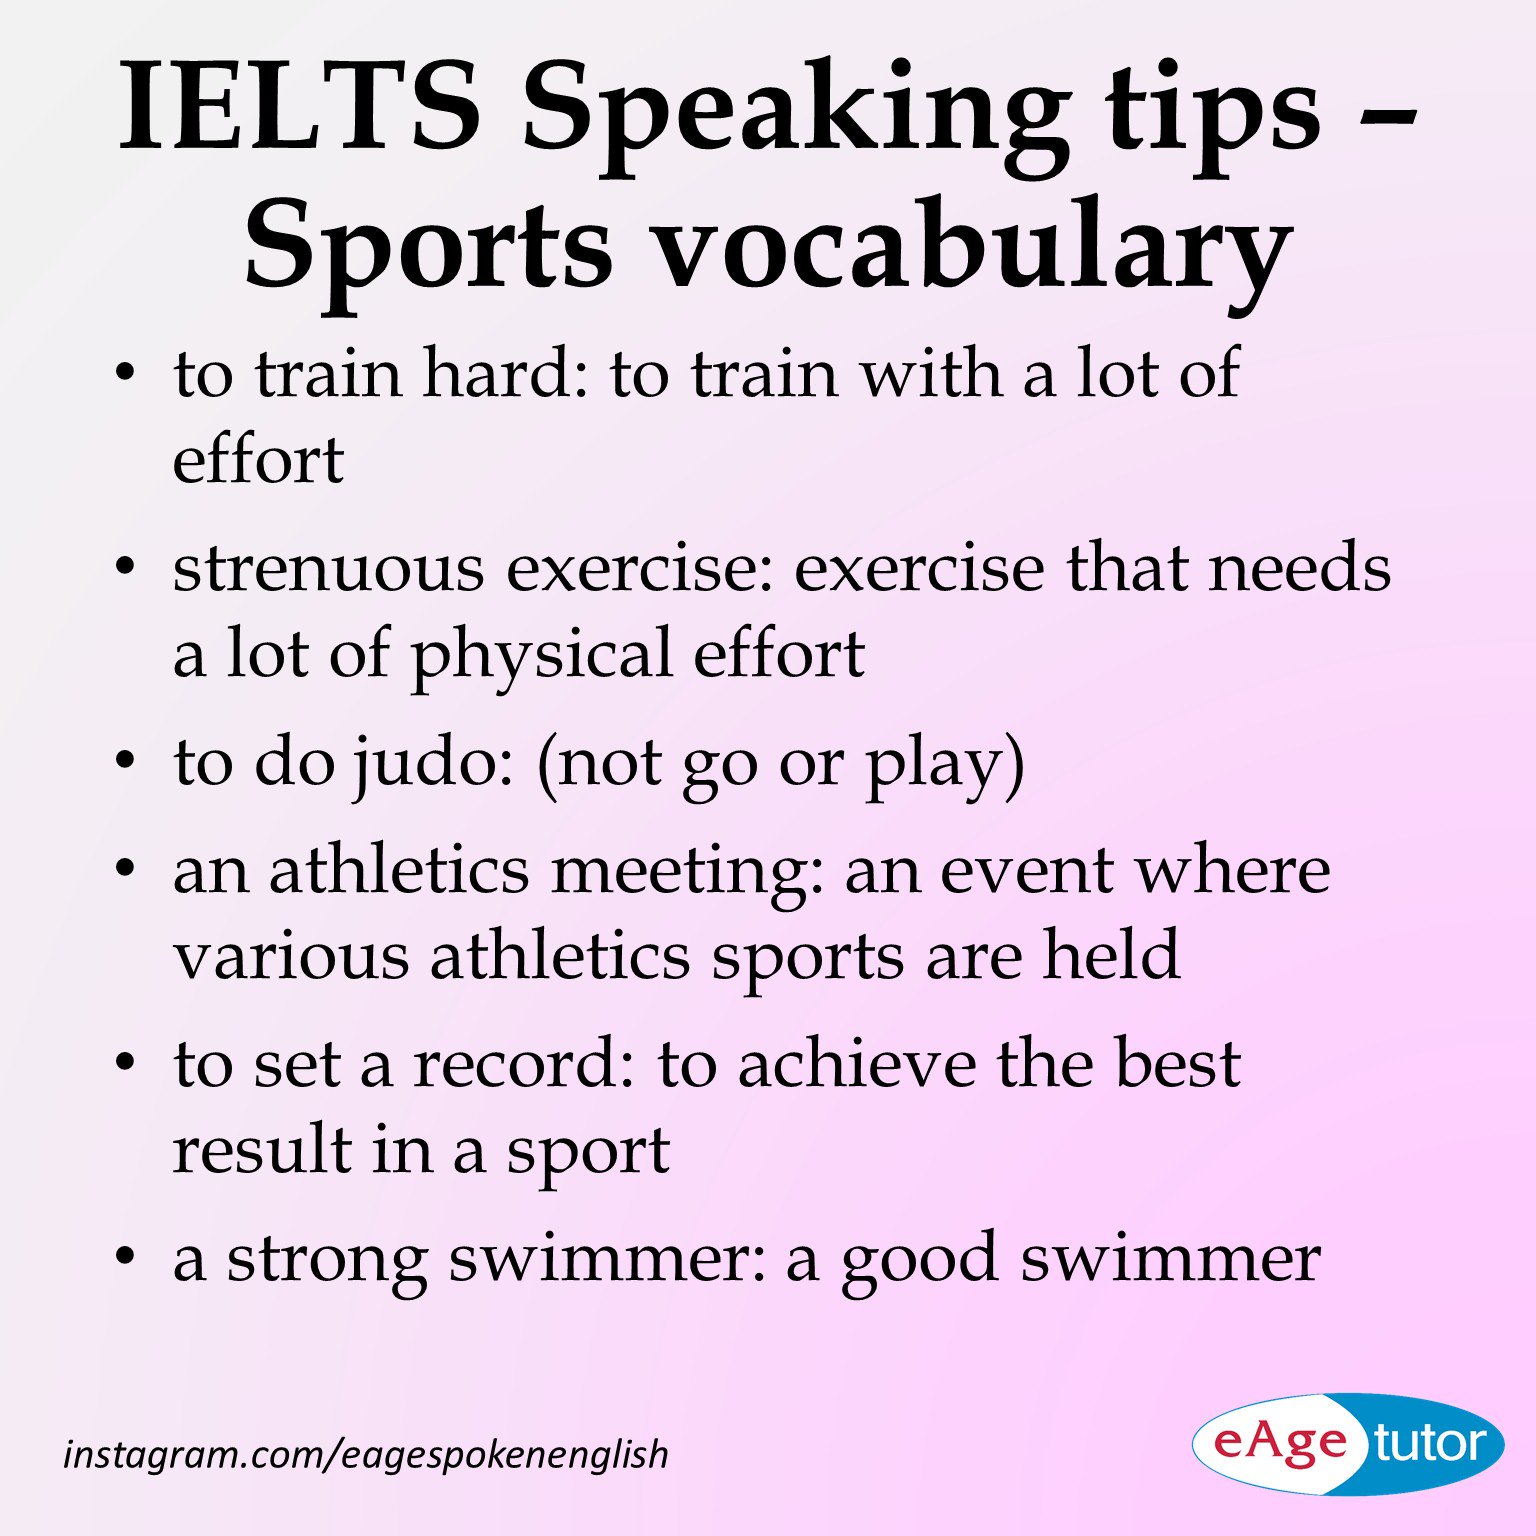 eAge Spoken English on X: IELTS Speaking tips - Learn some sports # vocabulary #ieltsspeakingtips  / X